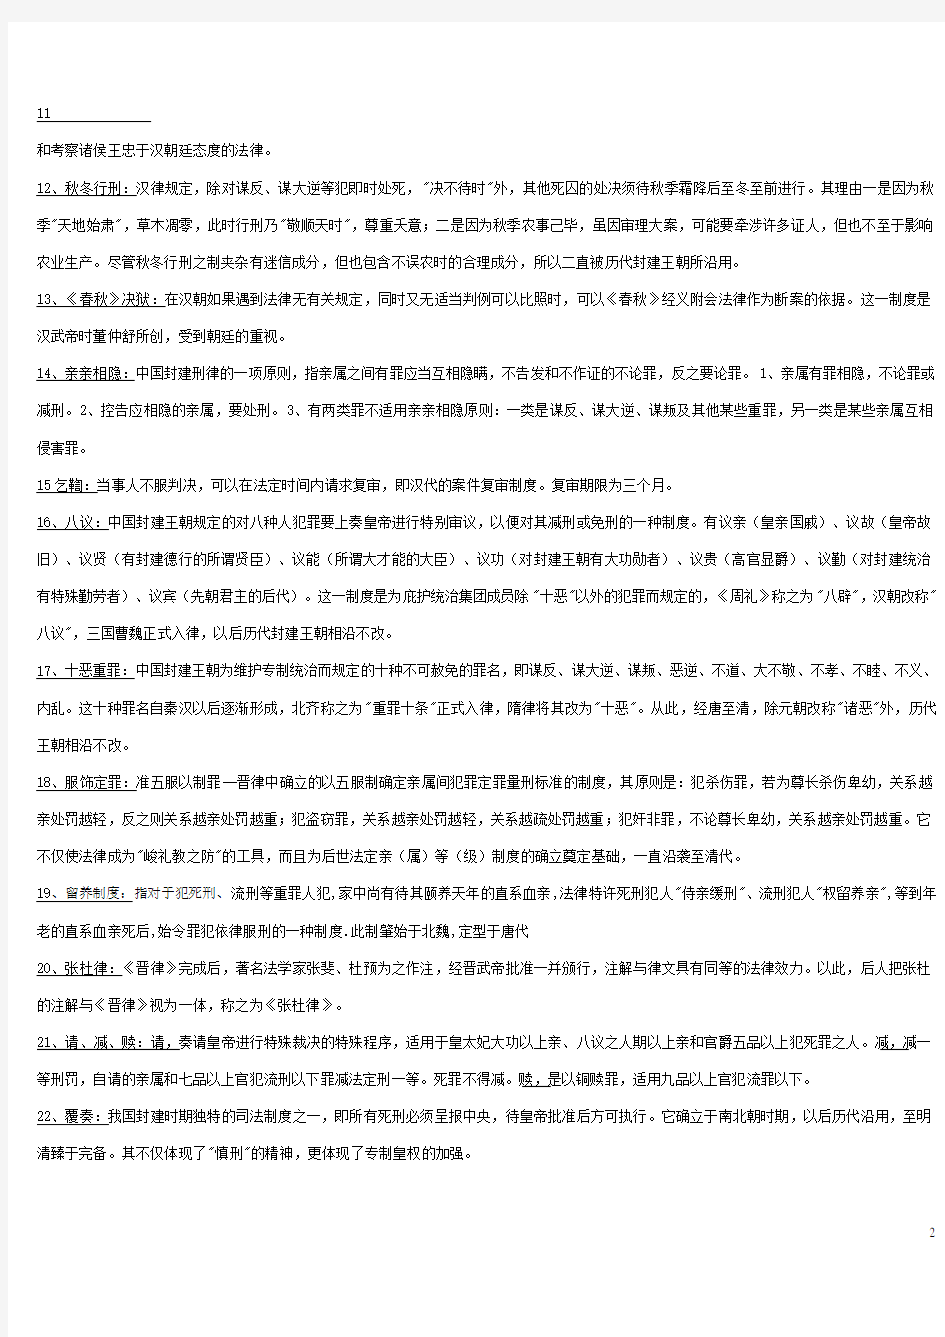 中国法制史名词解释(部分)和问答题